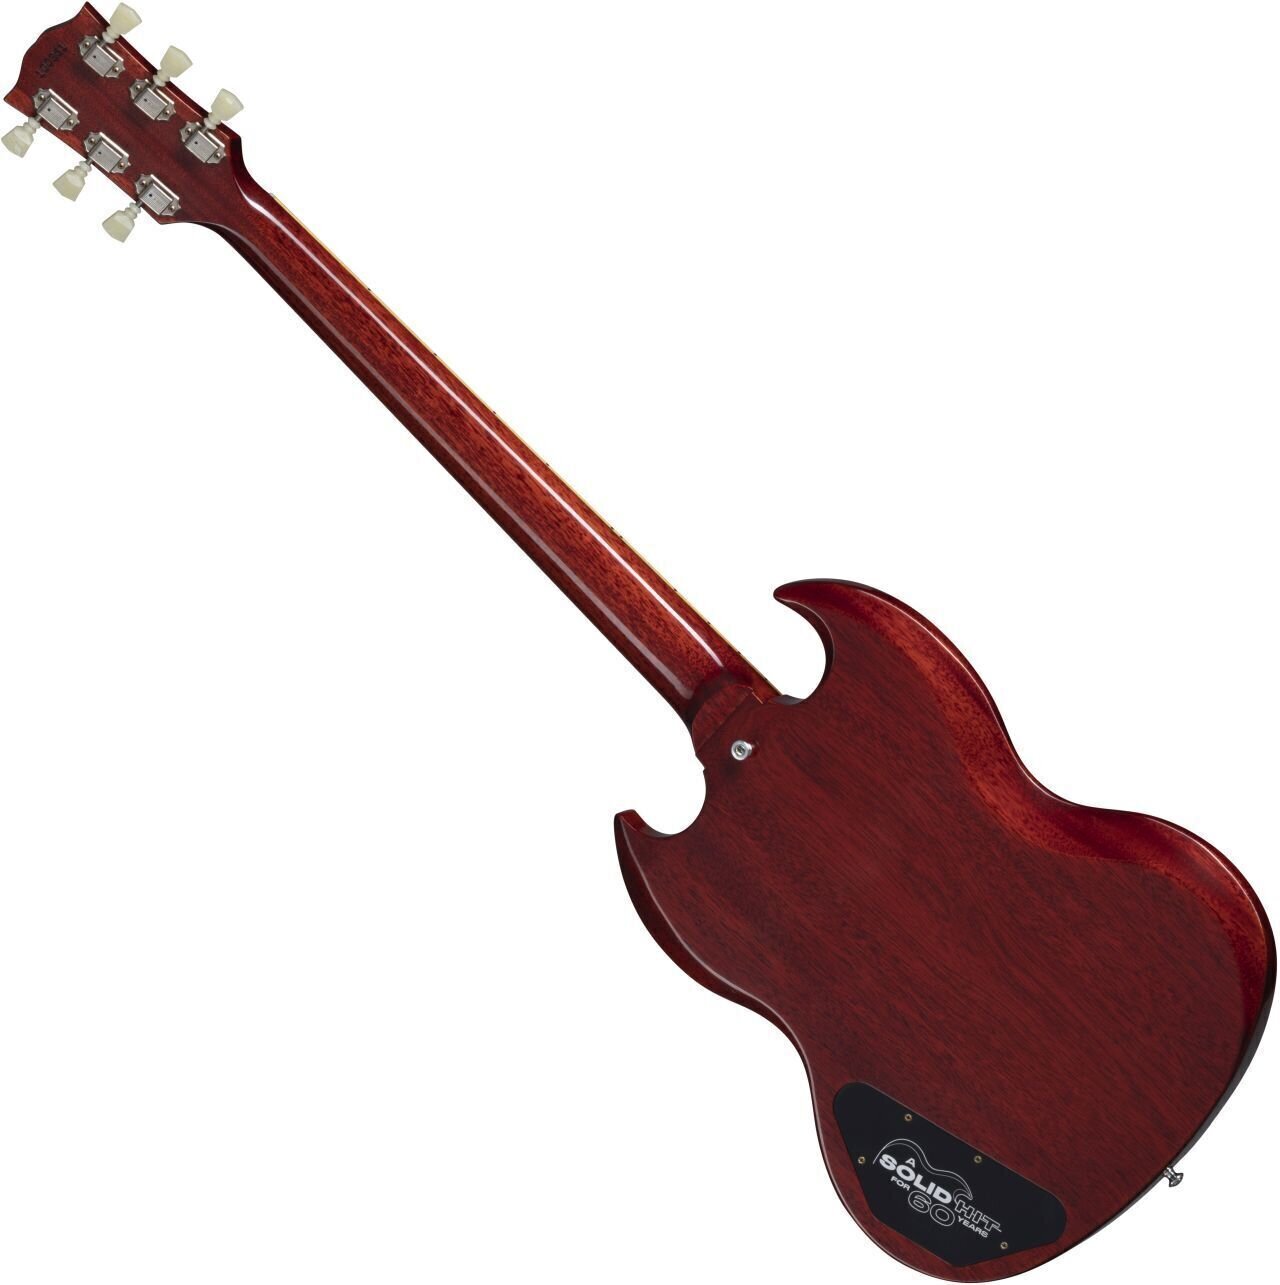 Gibson Sg Les Paul 1961 60th Ann. 2h Trem Rw - Vos Cherry Red - Guitarra eléctrica de doble corte - Variation 1